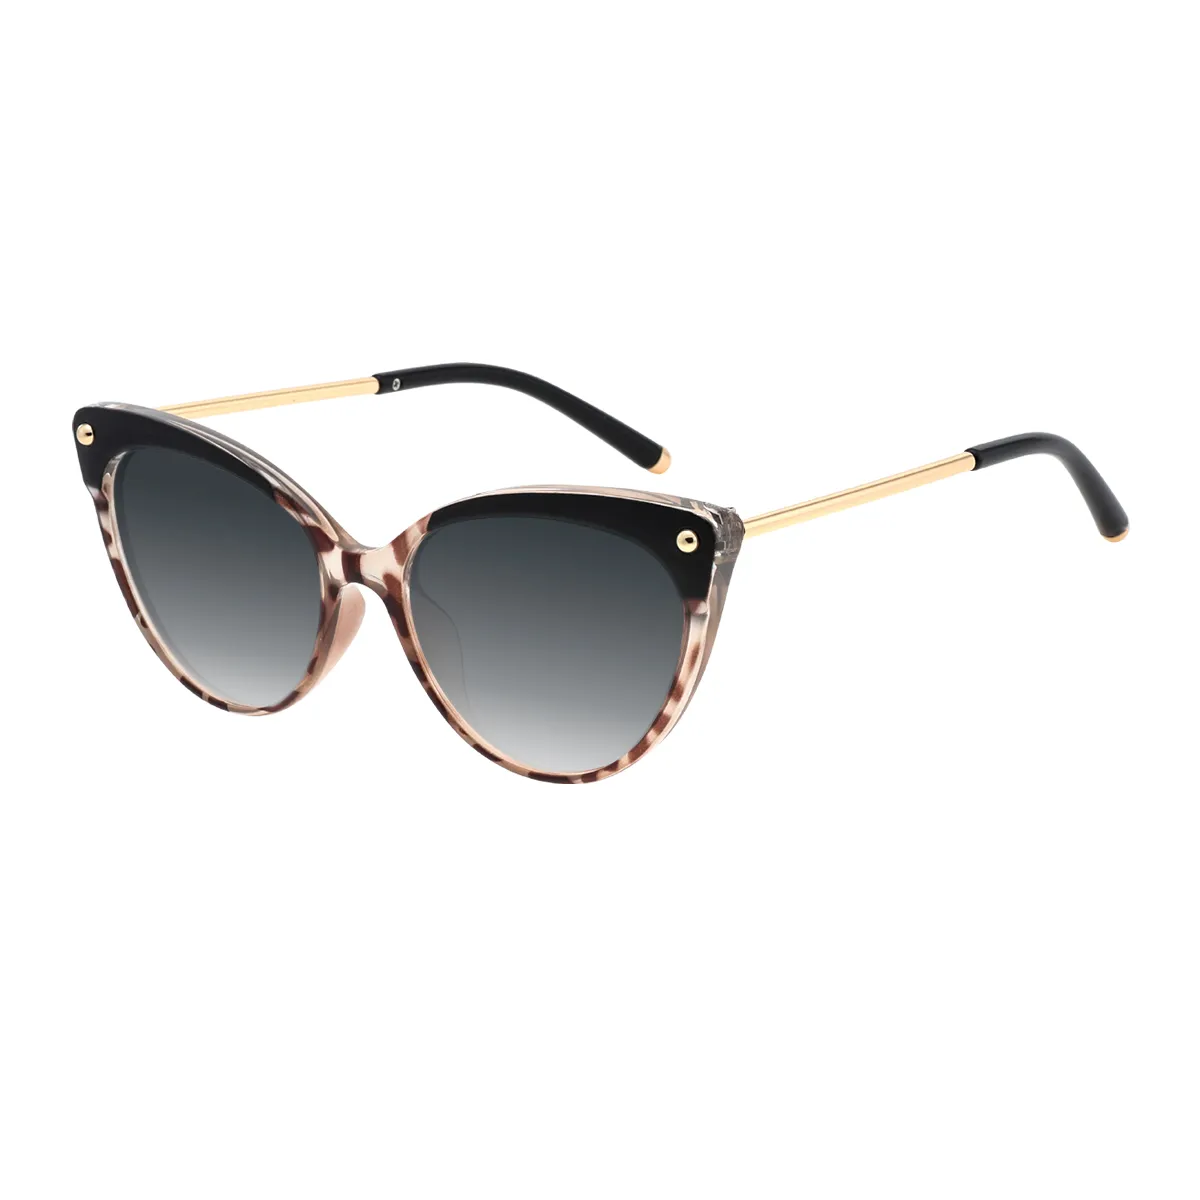 Valerie - Cat-eye Black Sunglasses for Women